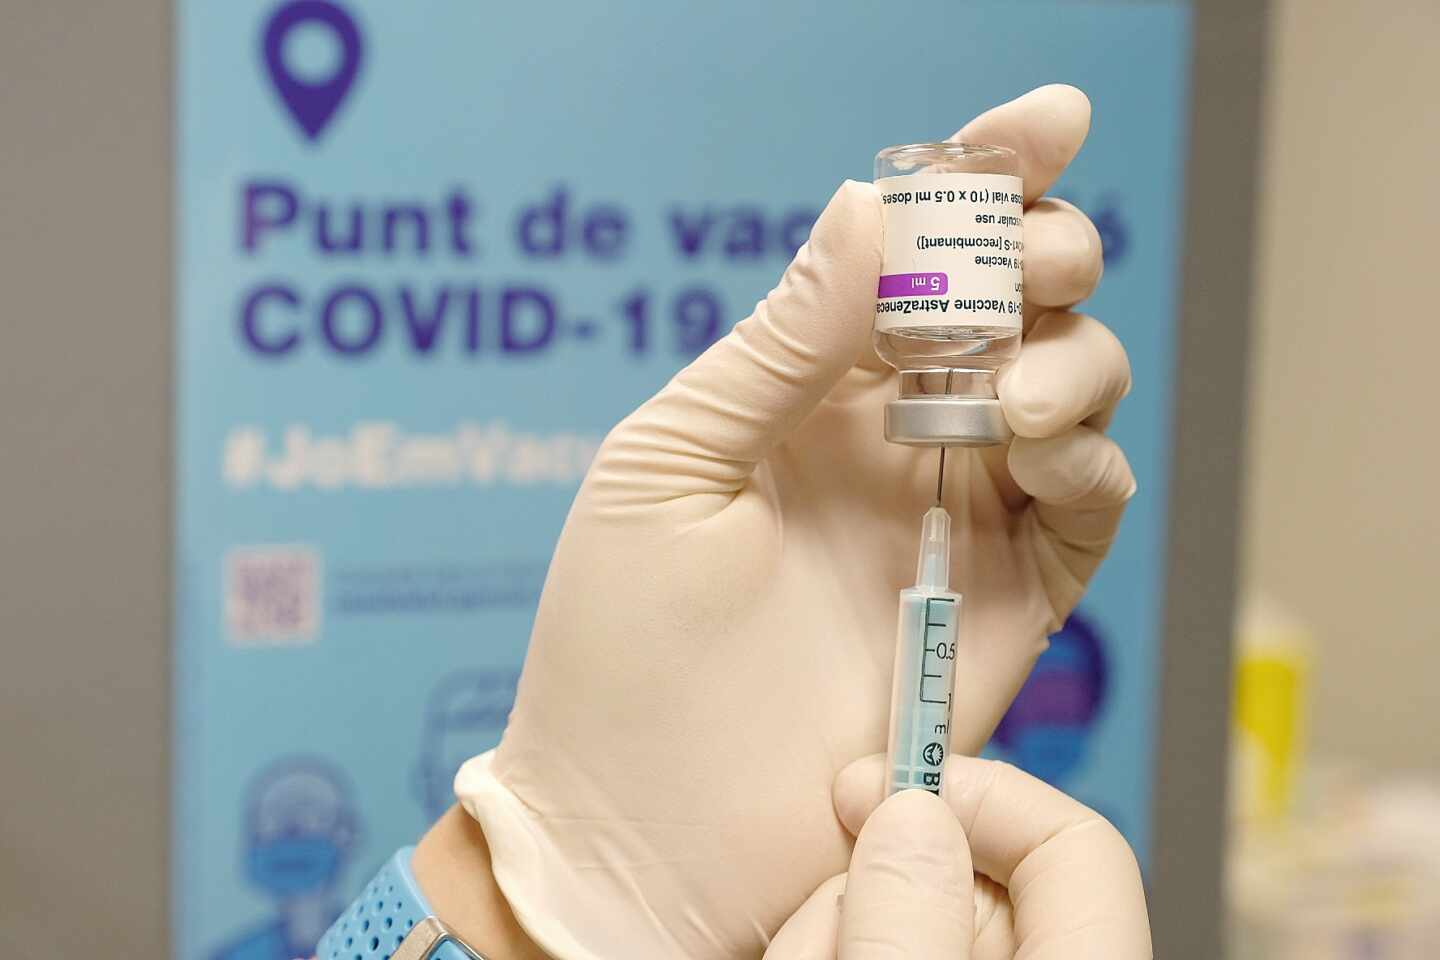 Cataluña denuncia que no llegarán las 148.000 vacunas de AstraZeneca previstas